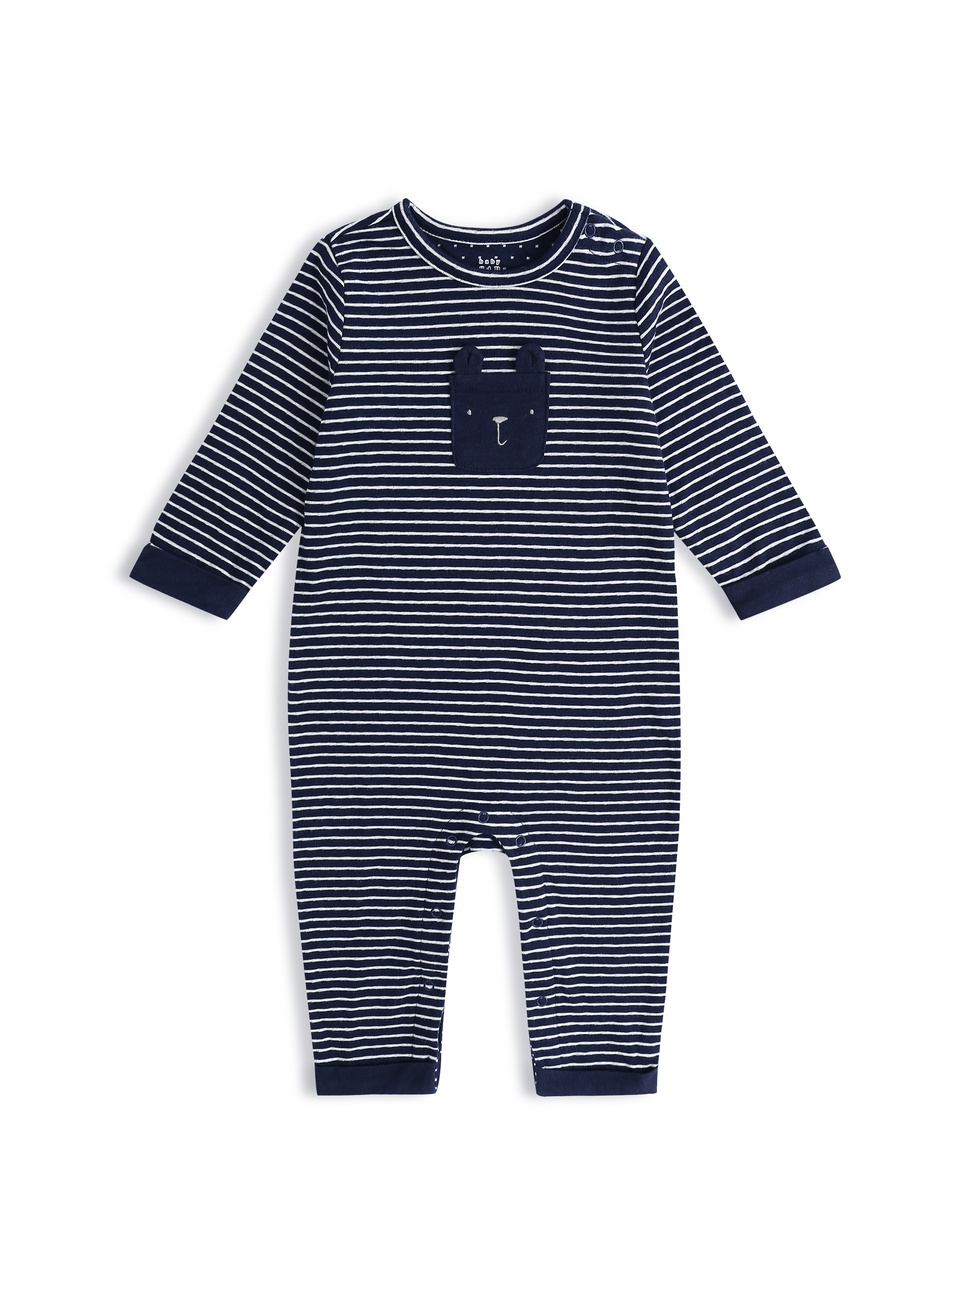 嬰兒裝|柔軟條紋圓領長袖包屁衣-海軍藍色